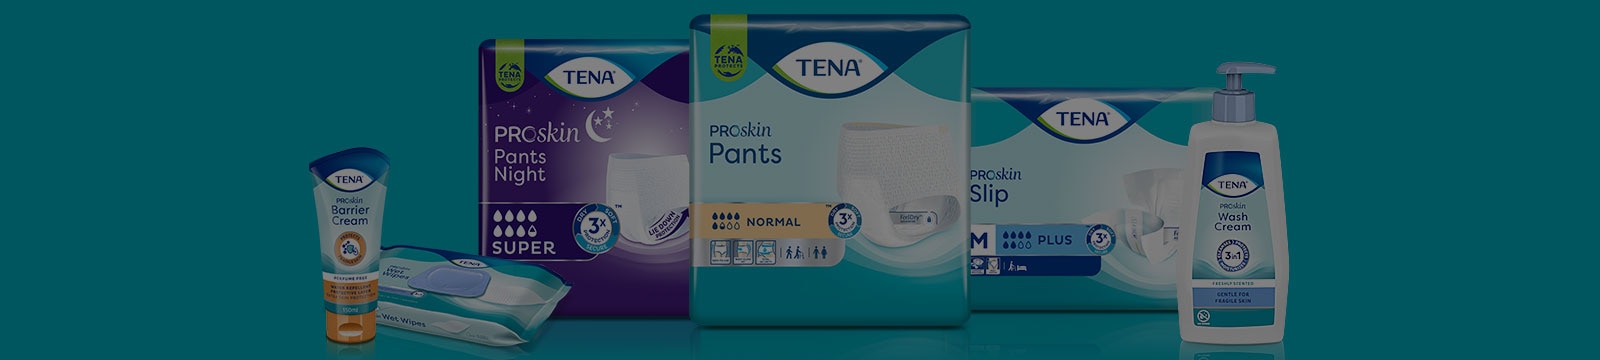 La gamma di prodotti TENA ProSkin  